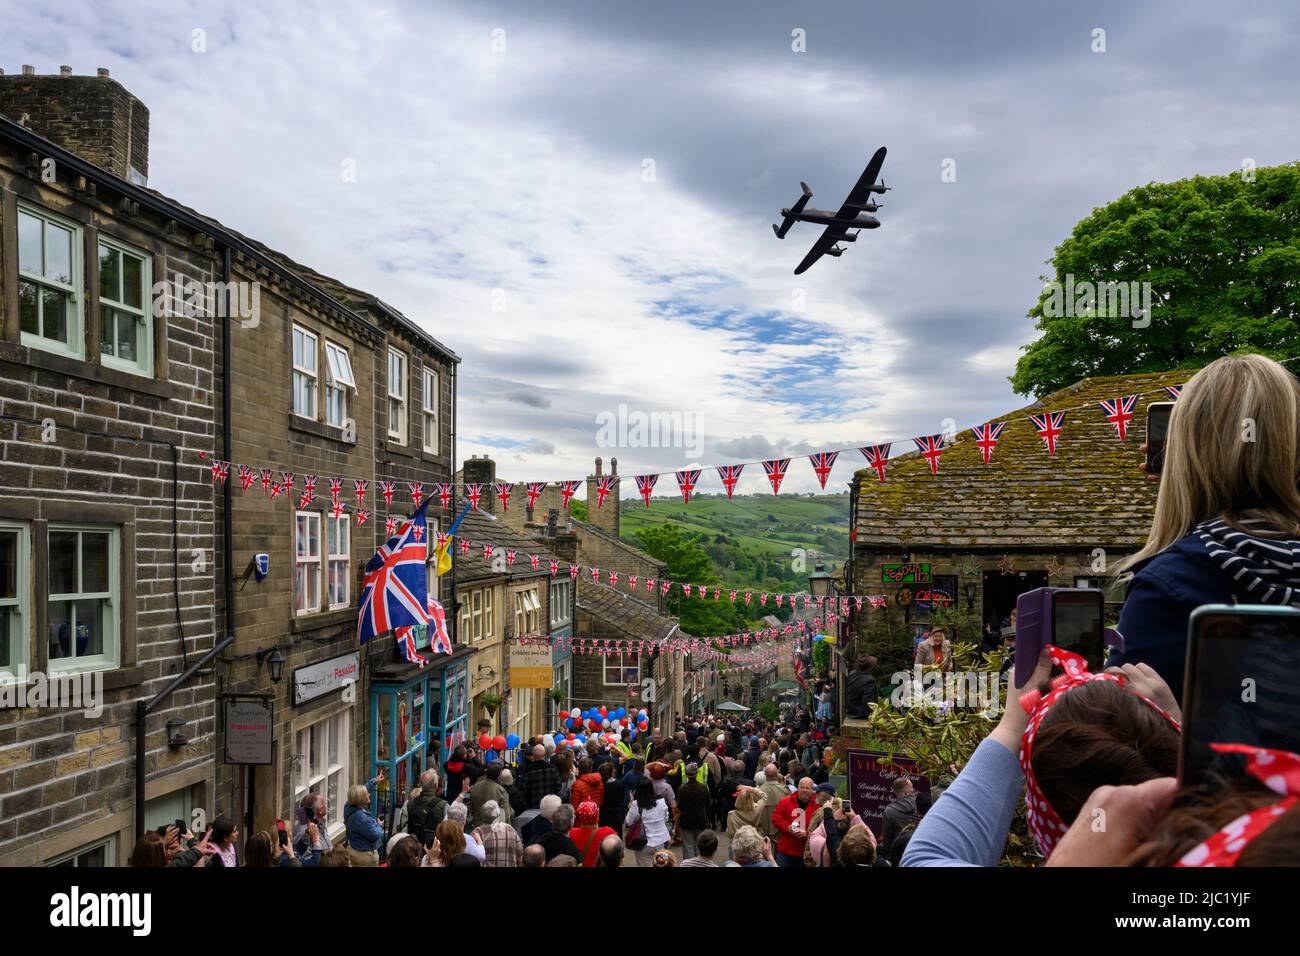 Fin de semana de Haworth 1940 (concurrida calle principal decorada en Union Jacks, viendo un avión histórico, evento anual) - West Yorkshire, Inglaterra, Reino Unido. Foto de stock